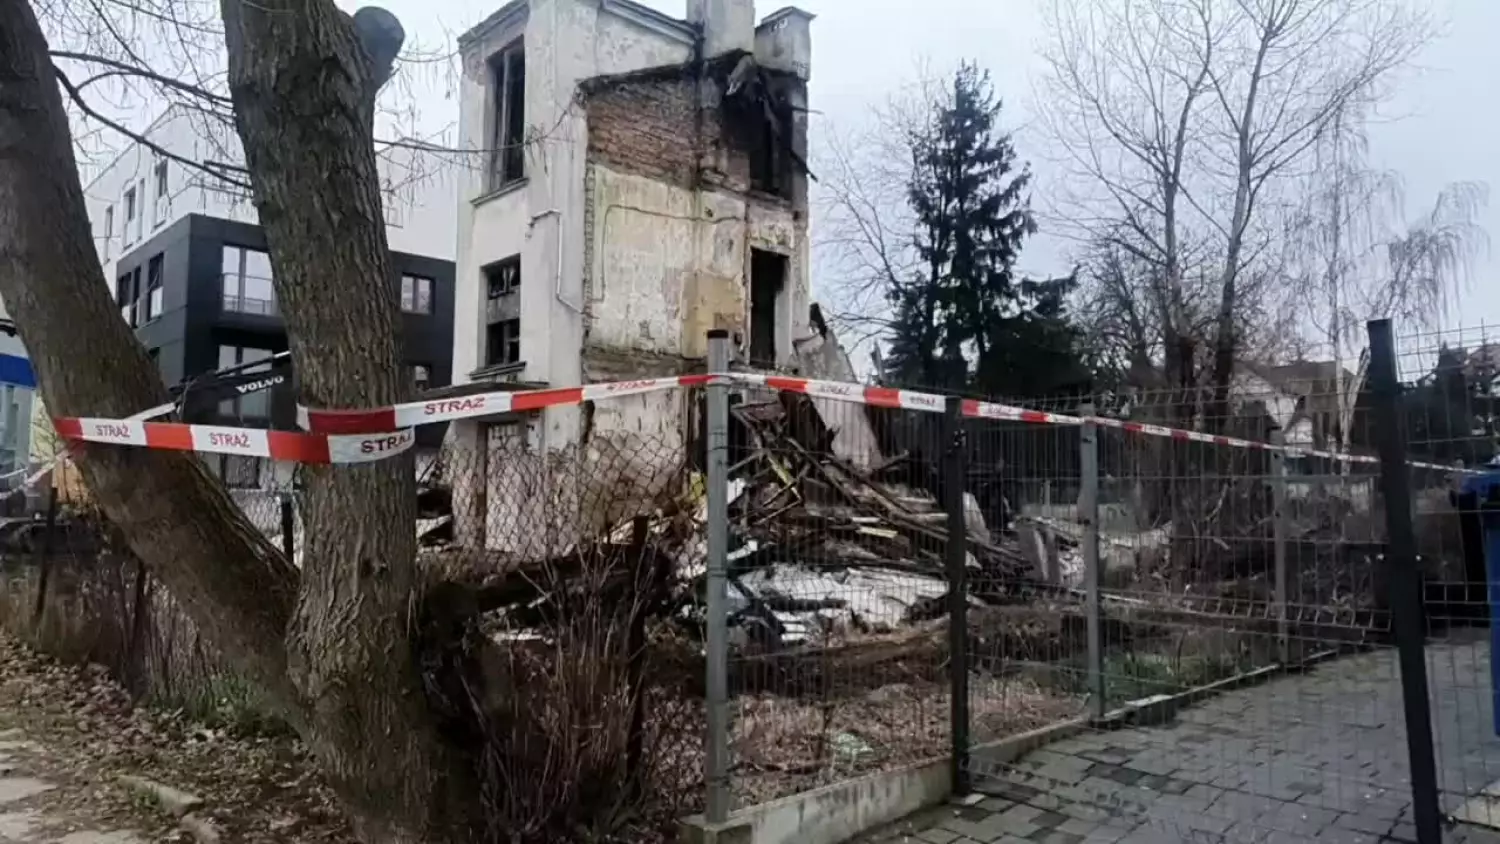 Runął krzywy dom w Piasecznie